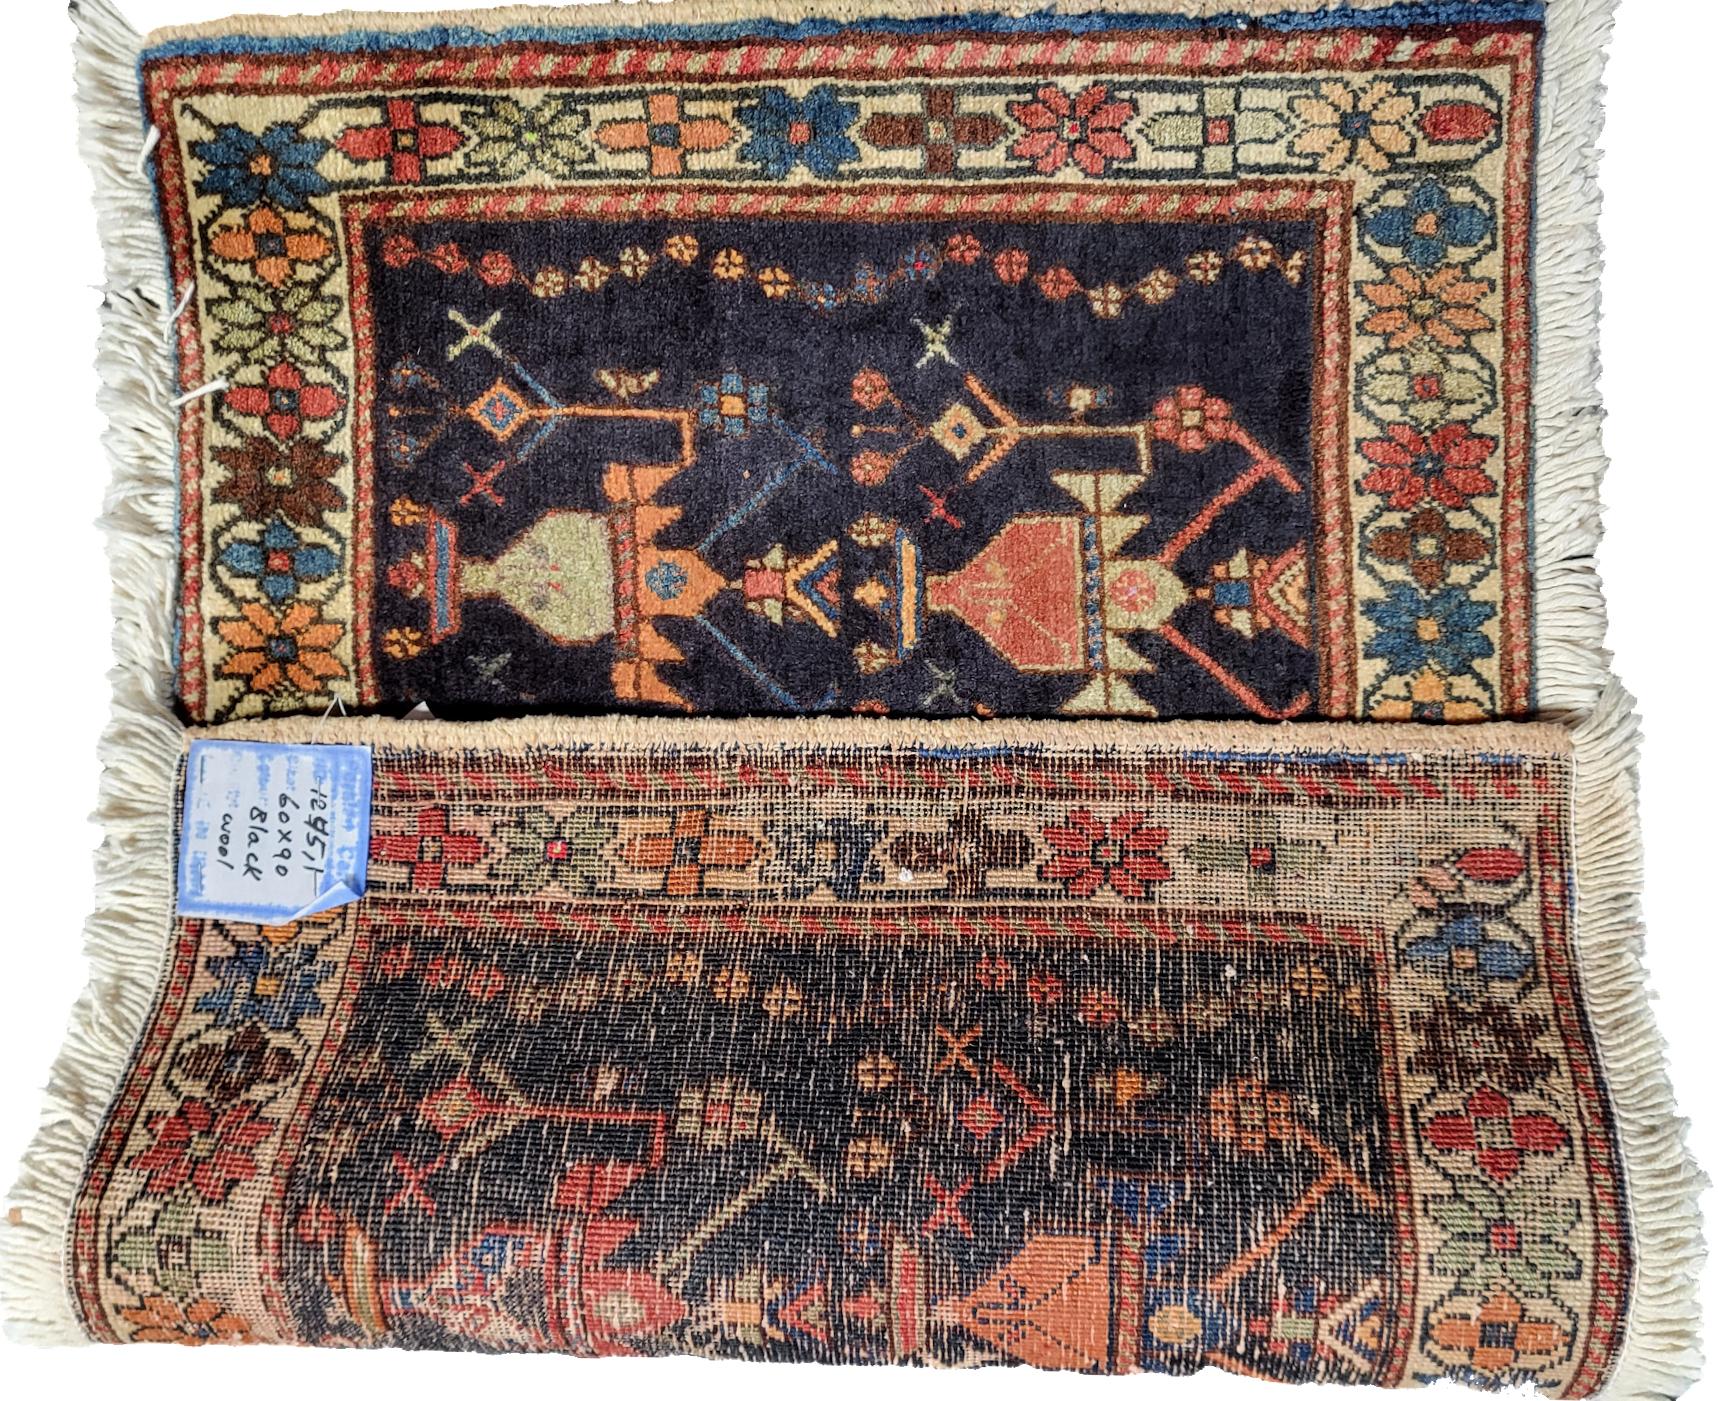 Skurriler Afshar, Stammes-Perserteppich

2' x 3'

Einwandfreier persischer Stammesteppich aus den 1940er Jahren, gewebt vom alten Afschar-Stamm. Bei diesem Teppich handelt es sich um eine Platte eines Sitzkissens des Afshar-Stammes, die als kleiner